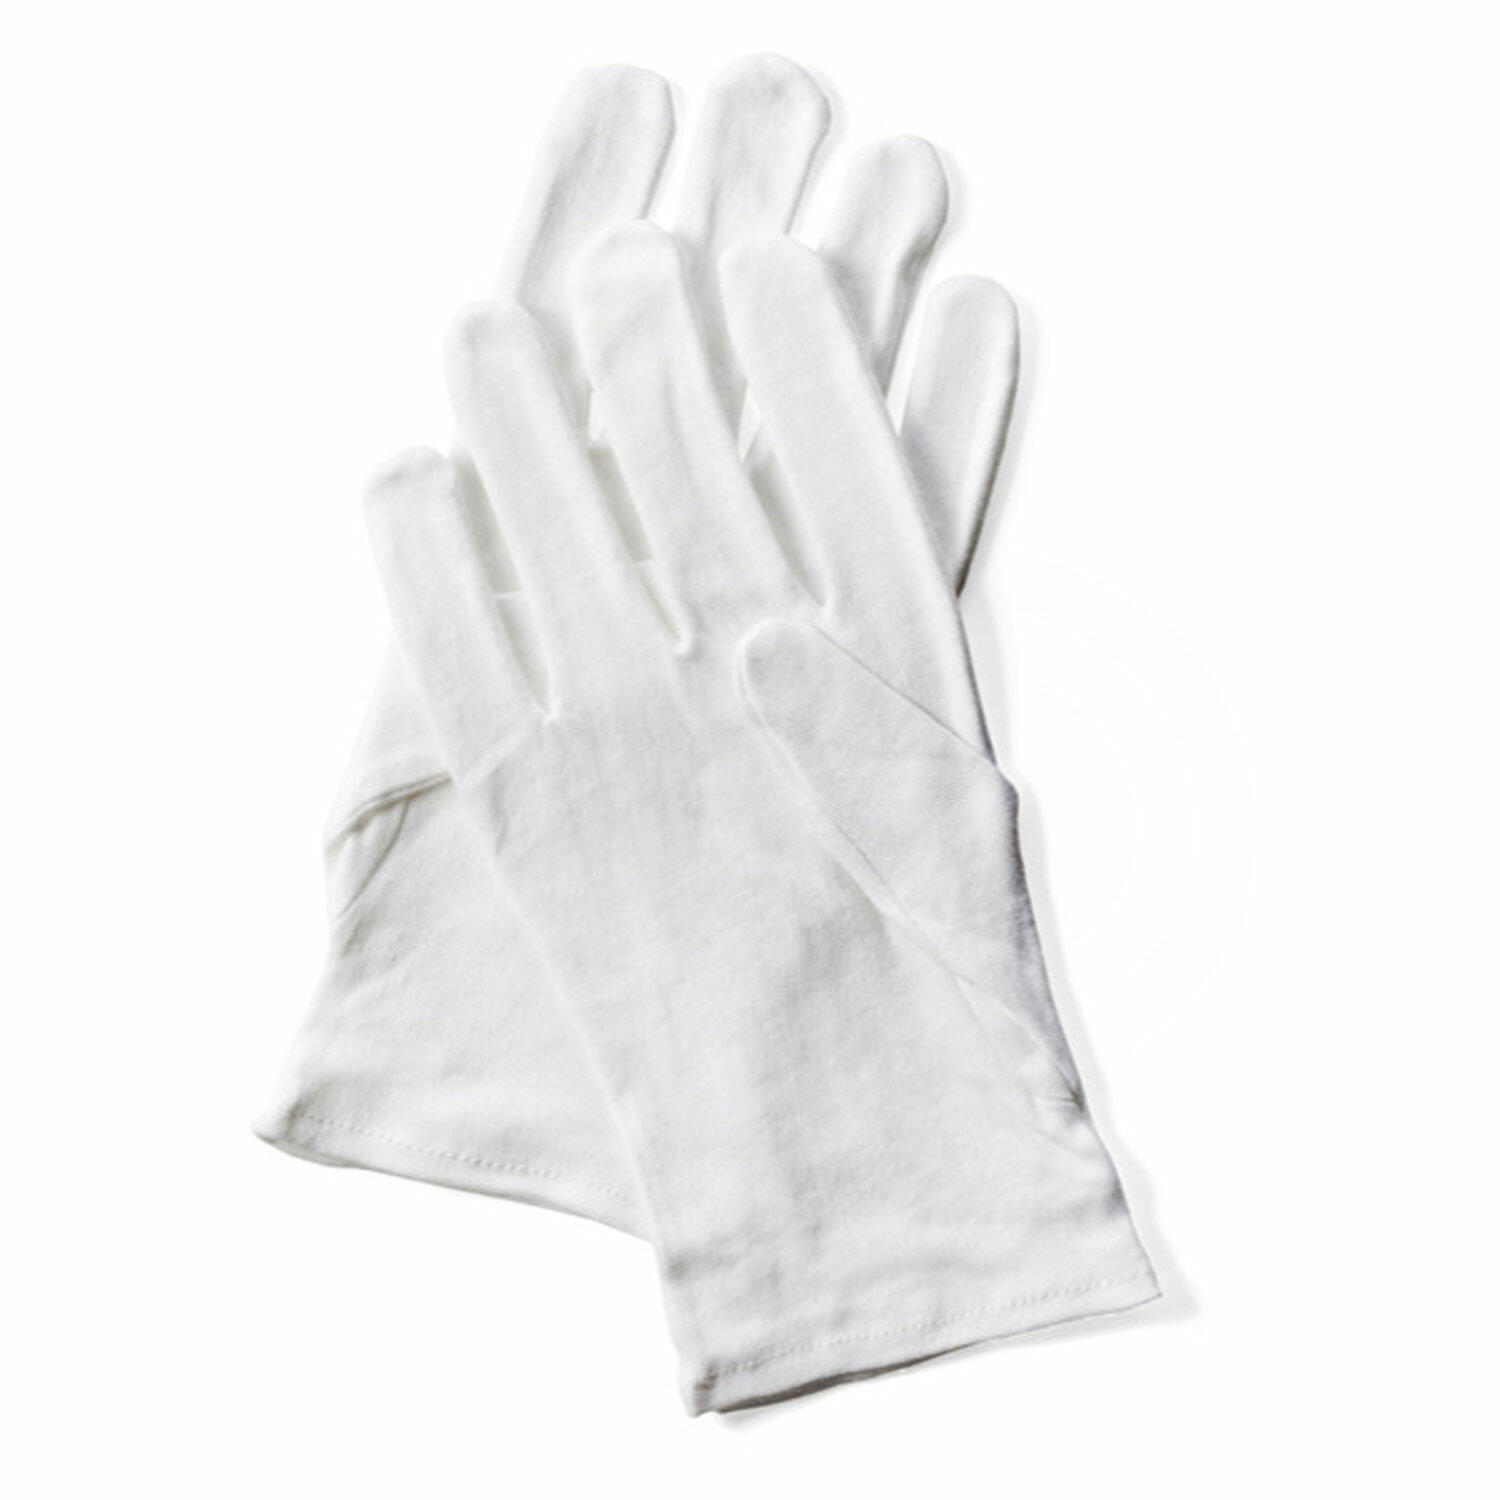 12 Paar TOP Baumwoll-Trikot Handschuhe weiß Gr 11 